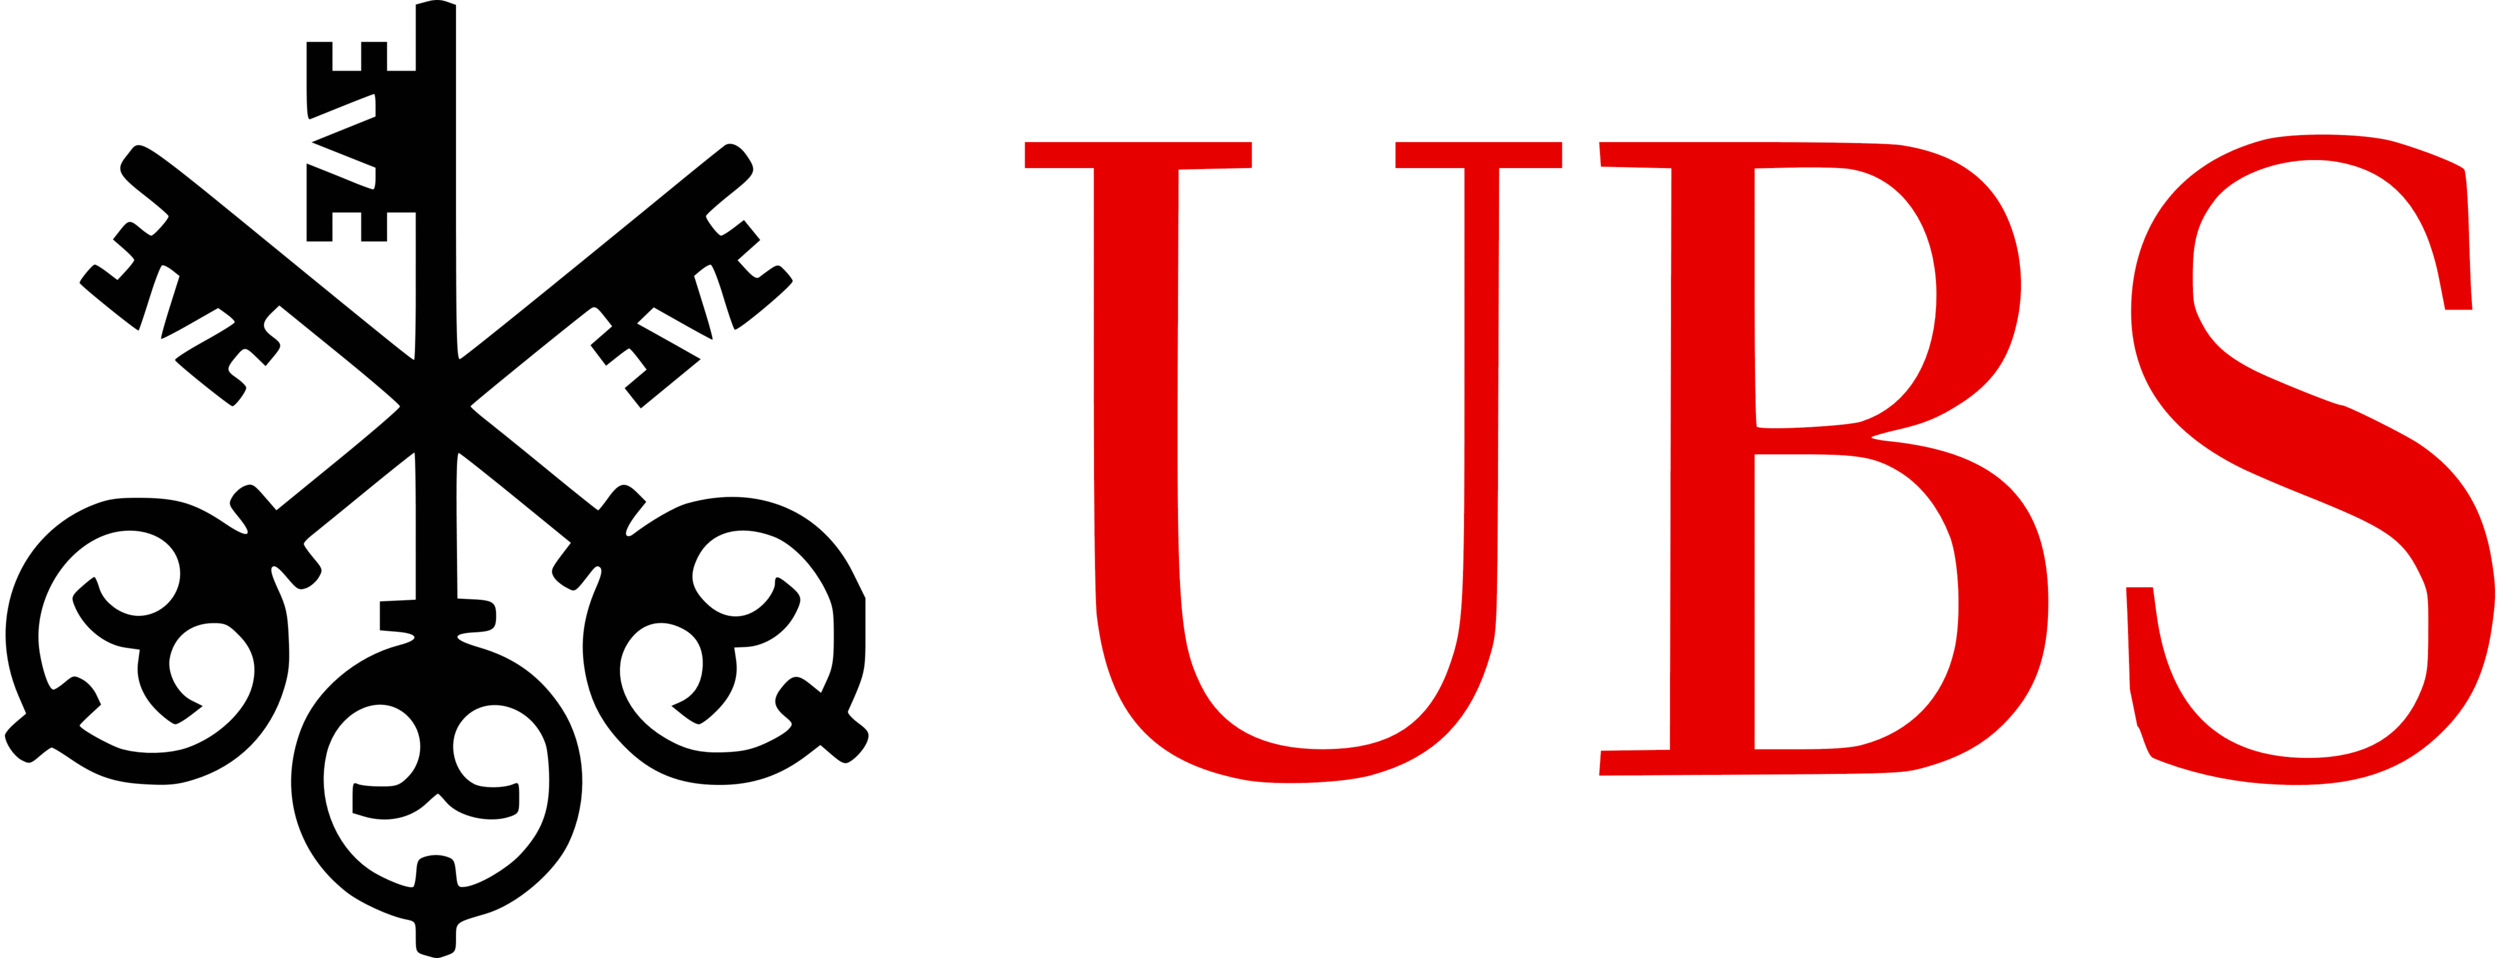 UBS_logo_logotype_emblem.png